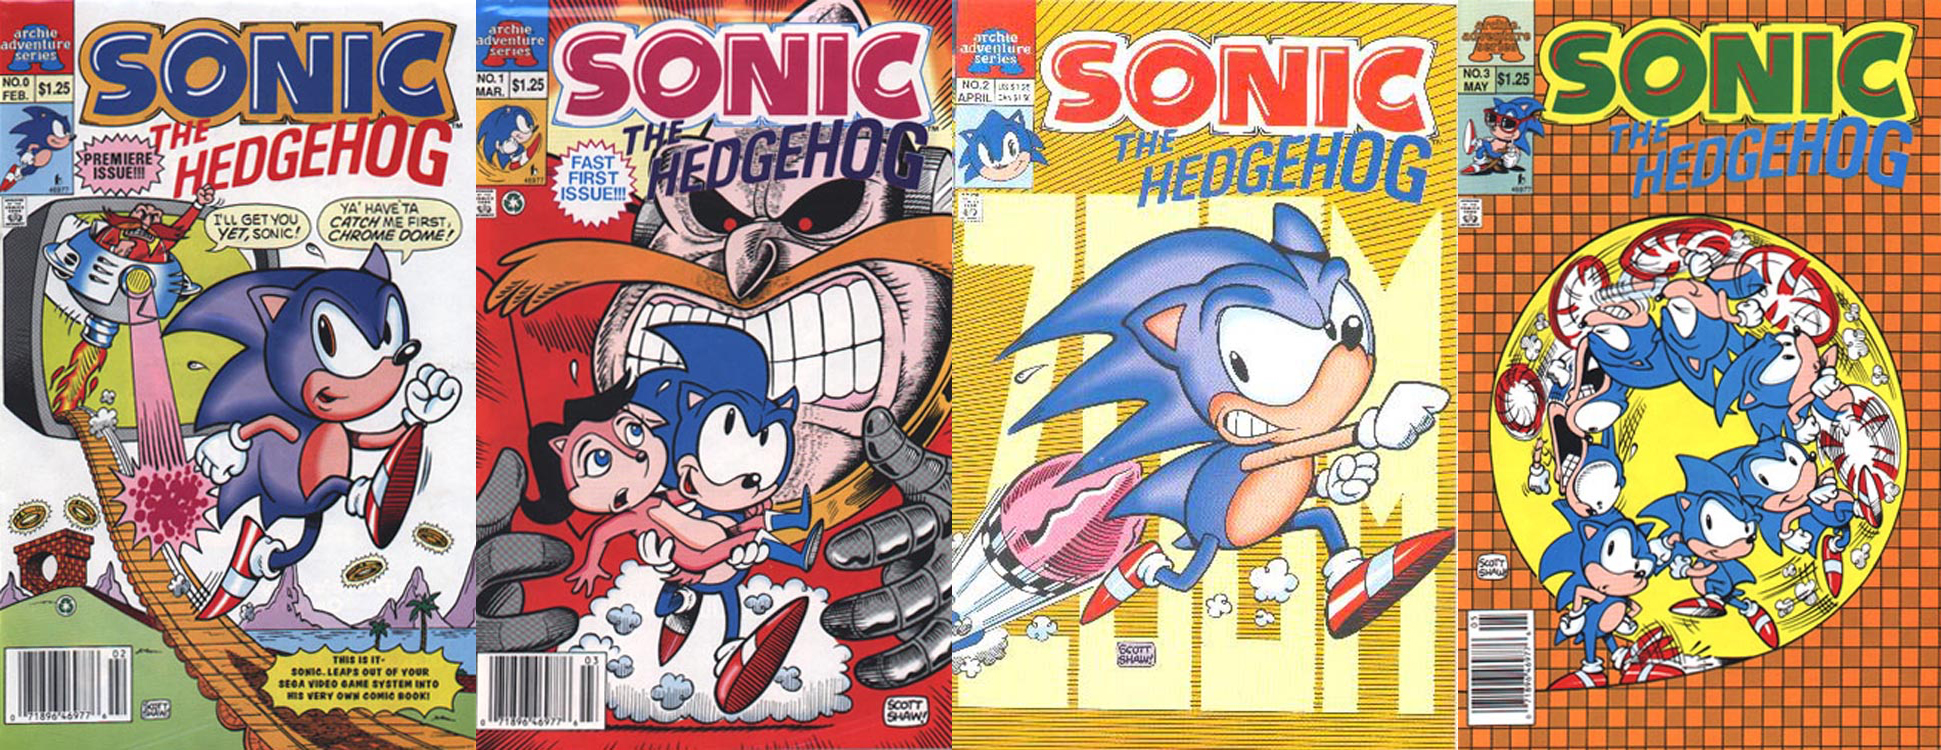 Sonic 2 Is Already Teasing Metal Sonic For Robotnik's Endgame